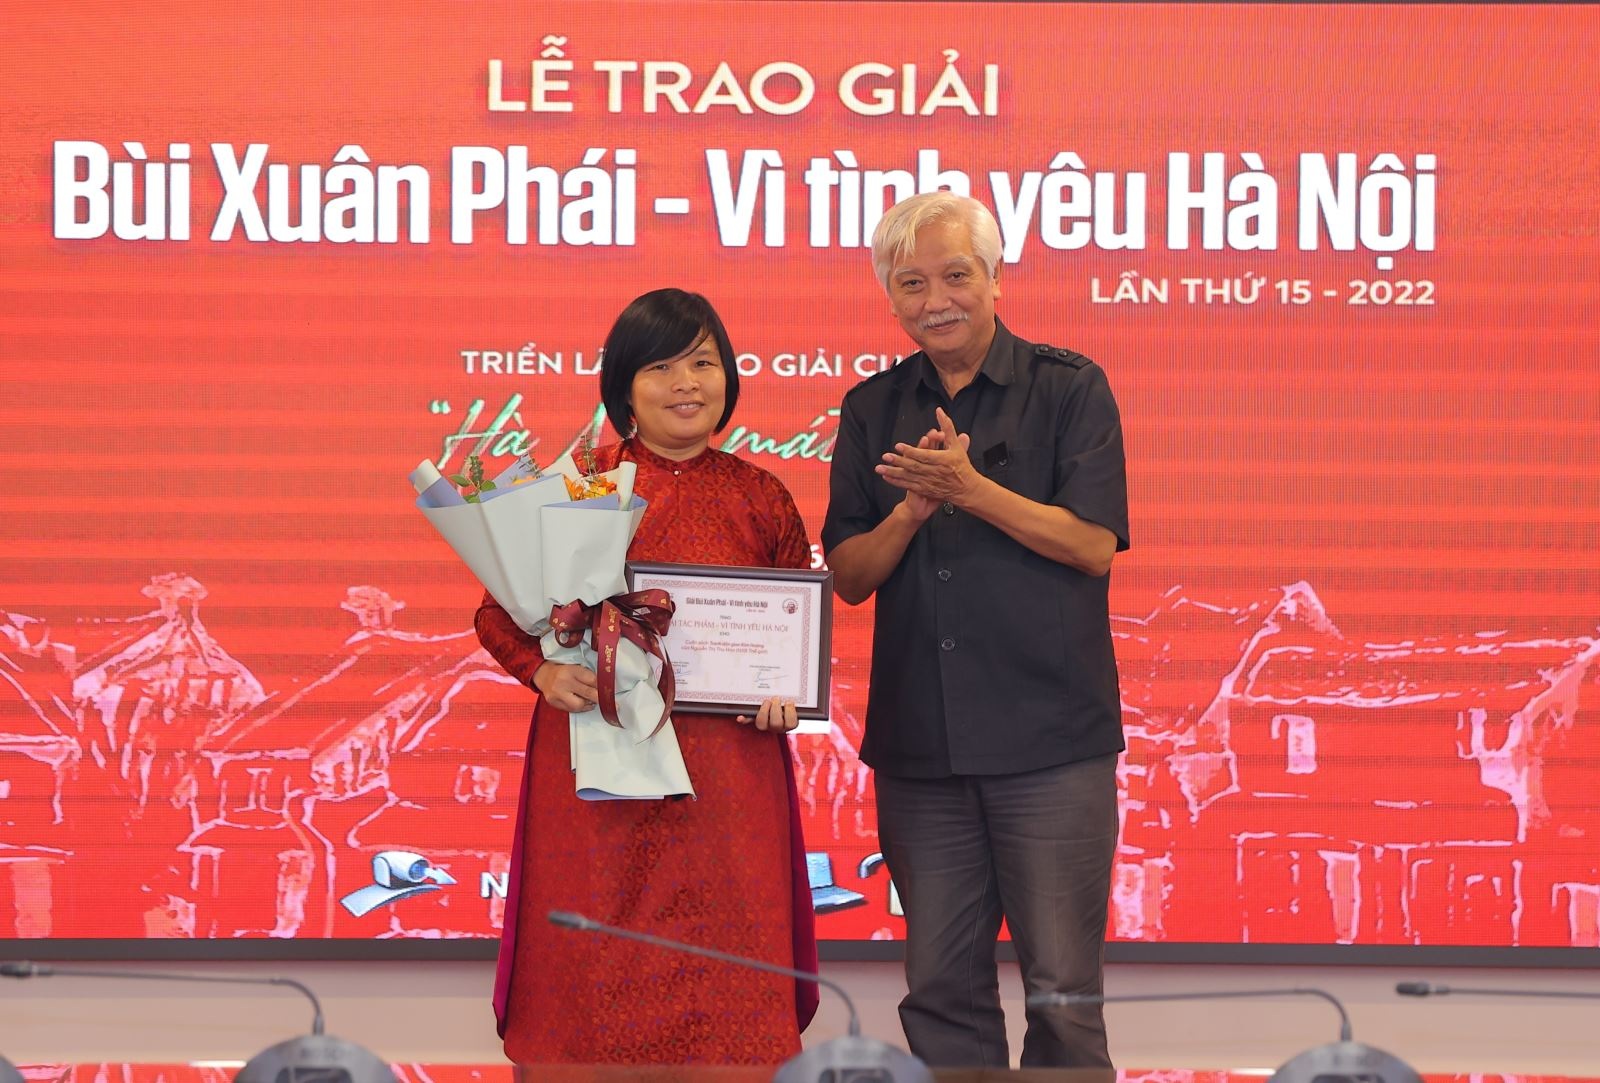 Đạo diễn Hà Nội trong mắt ai Trần Văn Thủy nhận Giải thưởng Lớn - 2